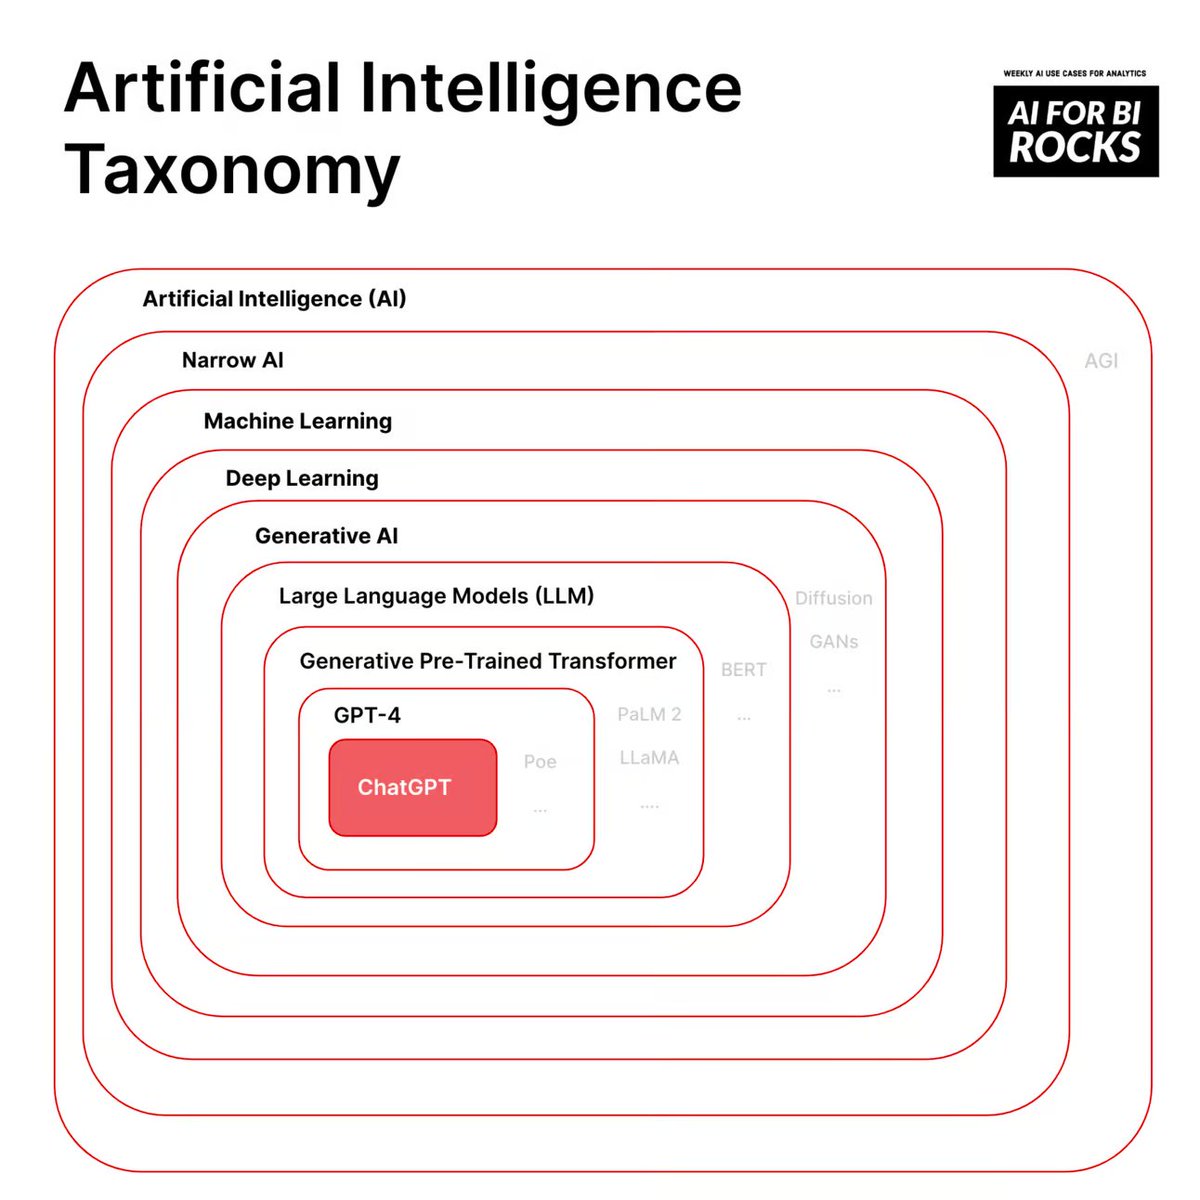 Taxonomie de l'#IA 🤖
par @ztobi #Transfonum